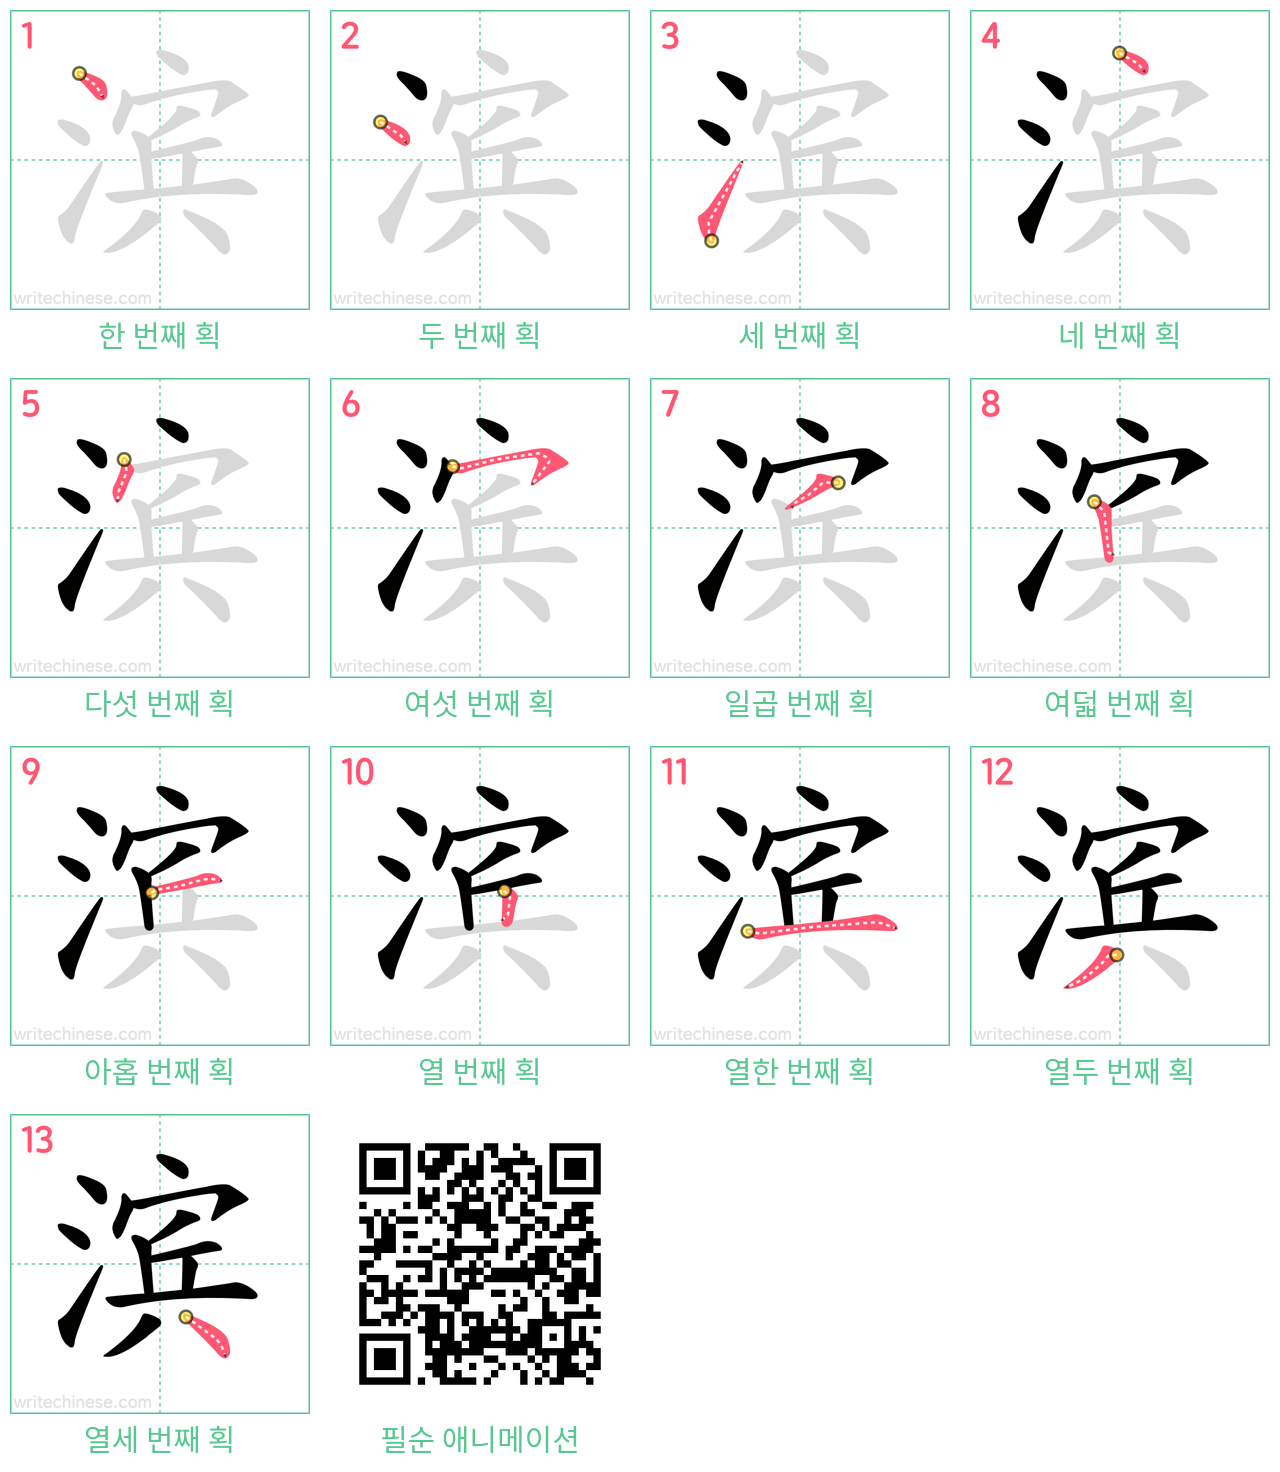 滨 step-by-step stroke order diagrams